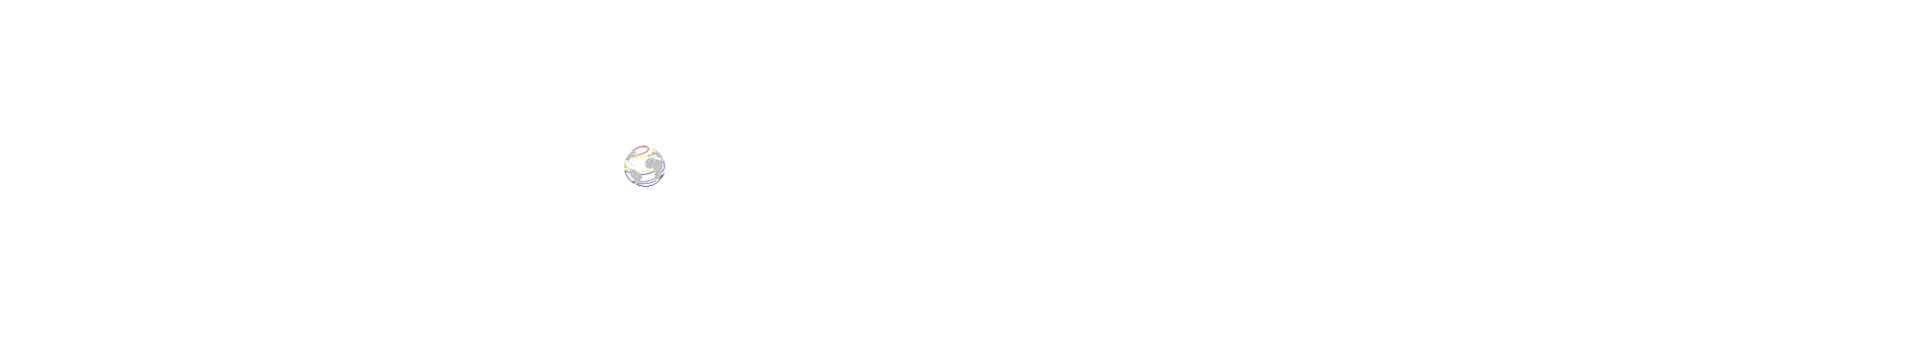 Logos2-1